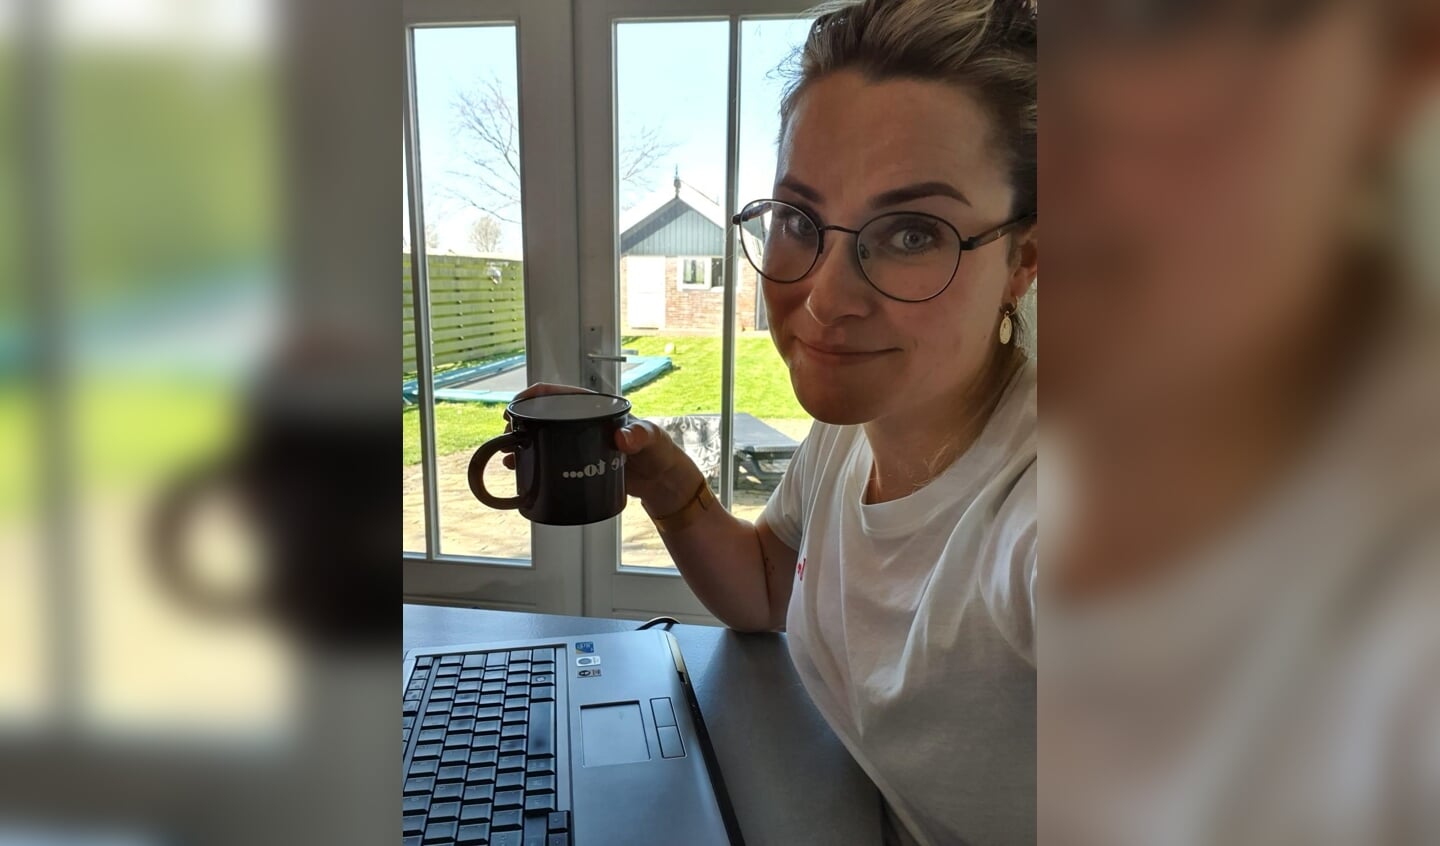 Shanna Zutt werkt vanuit huis om alle administratie bij Van der Sluis bv draaiende te houden. Daar hoort een kop koffie bij.